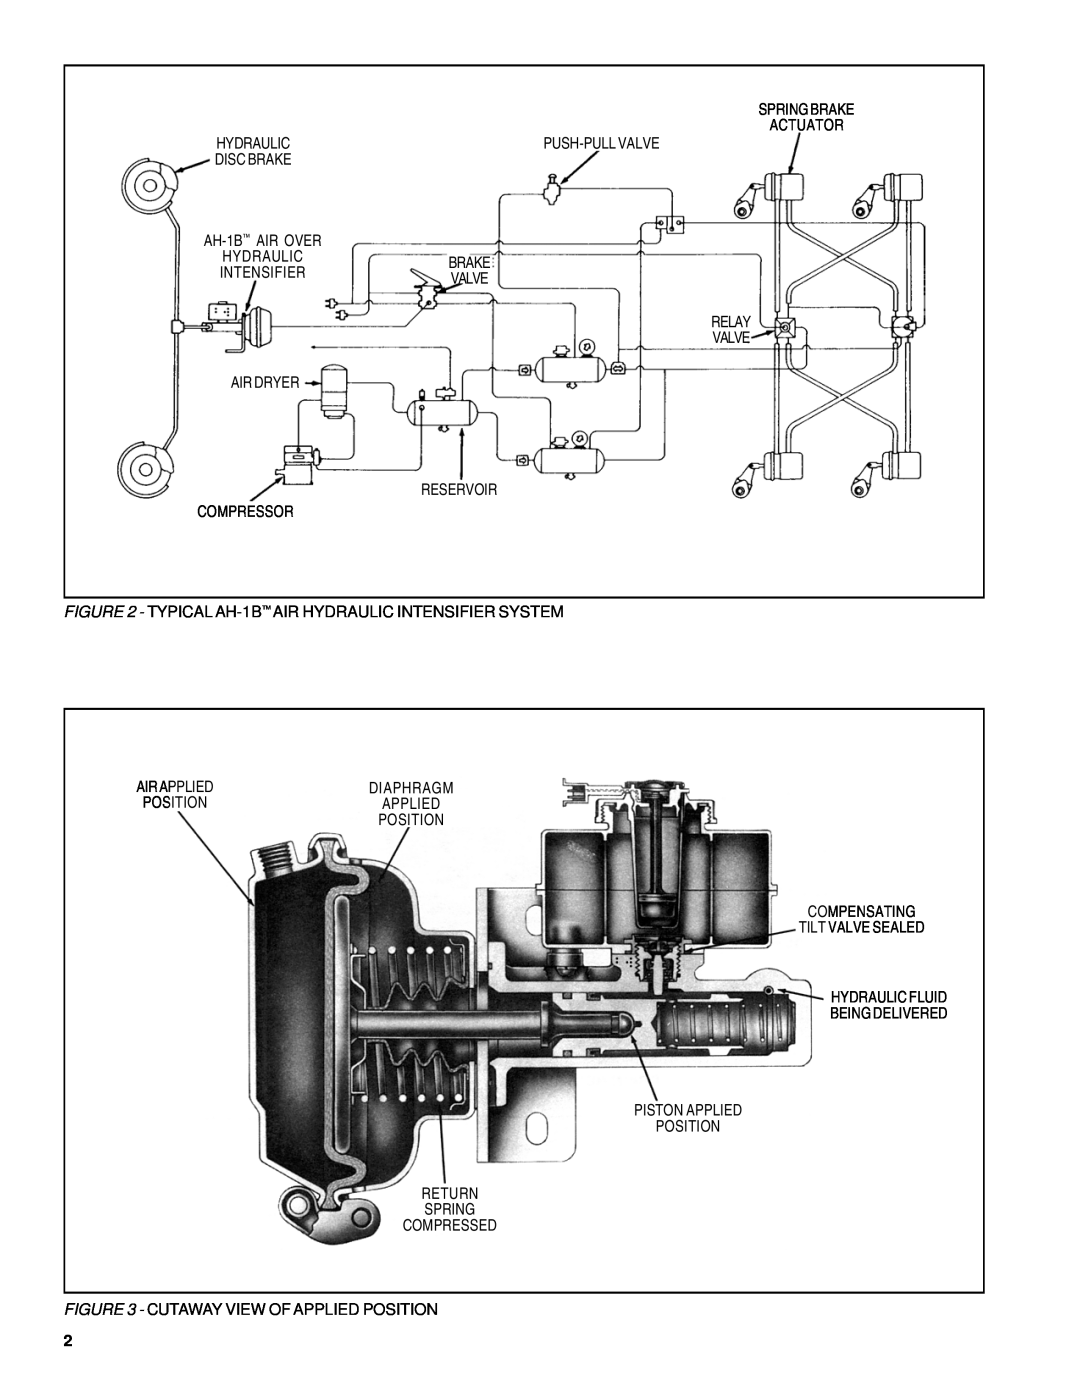 BENDIX SD-11-1326 manual Air Dryer 